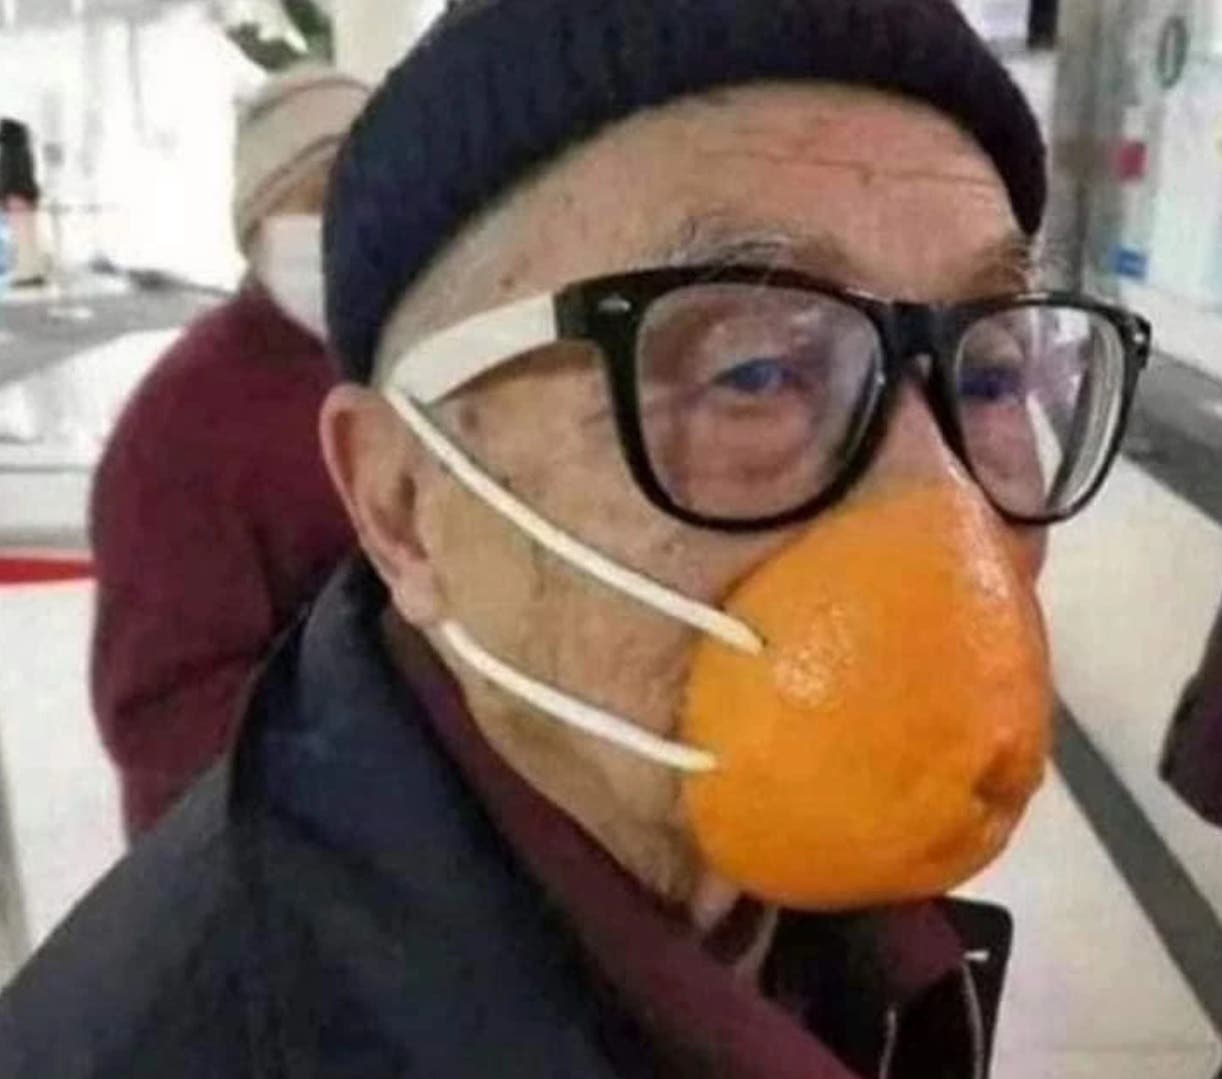 رجل استخدم قشر البرتقال لحماية نفسه من الفيروس واستنشاق فيتامين سي في نفس الوقت